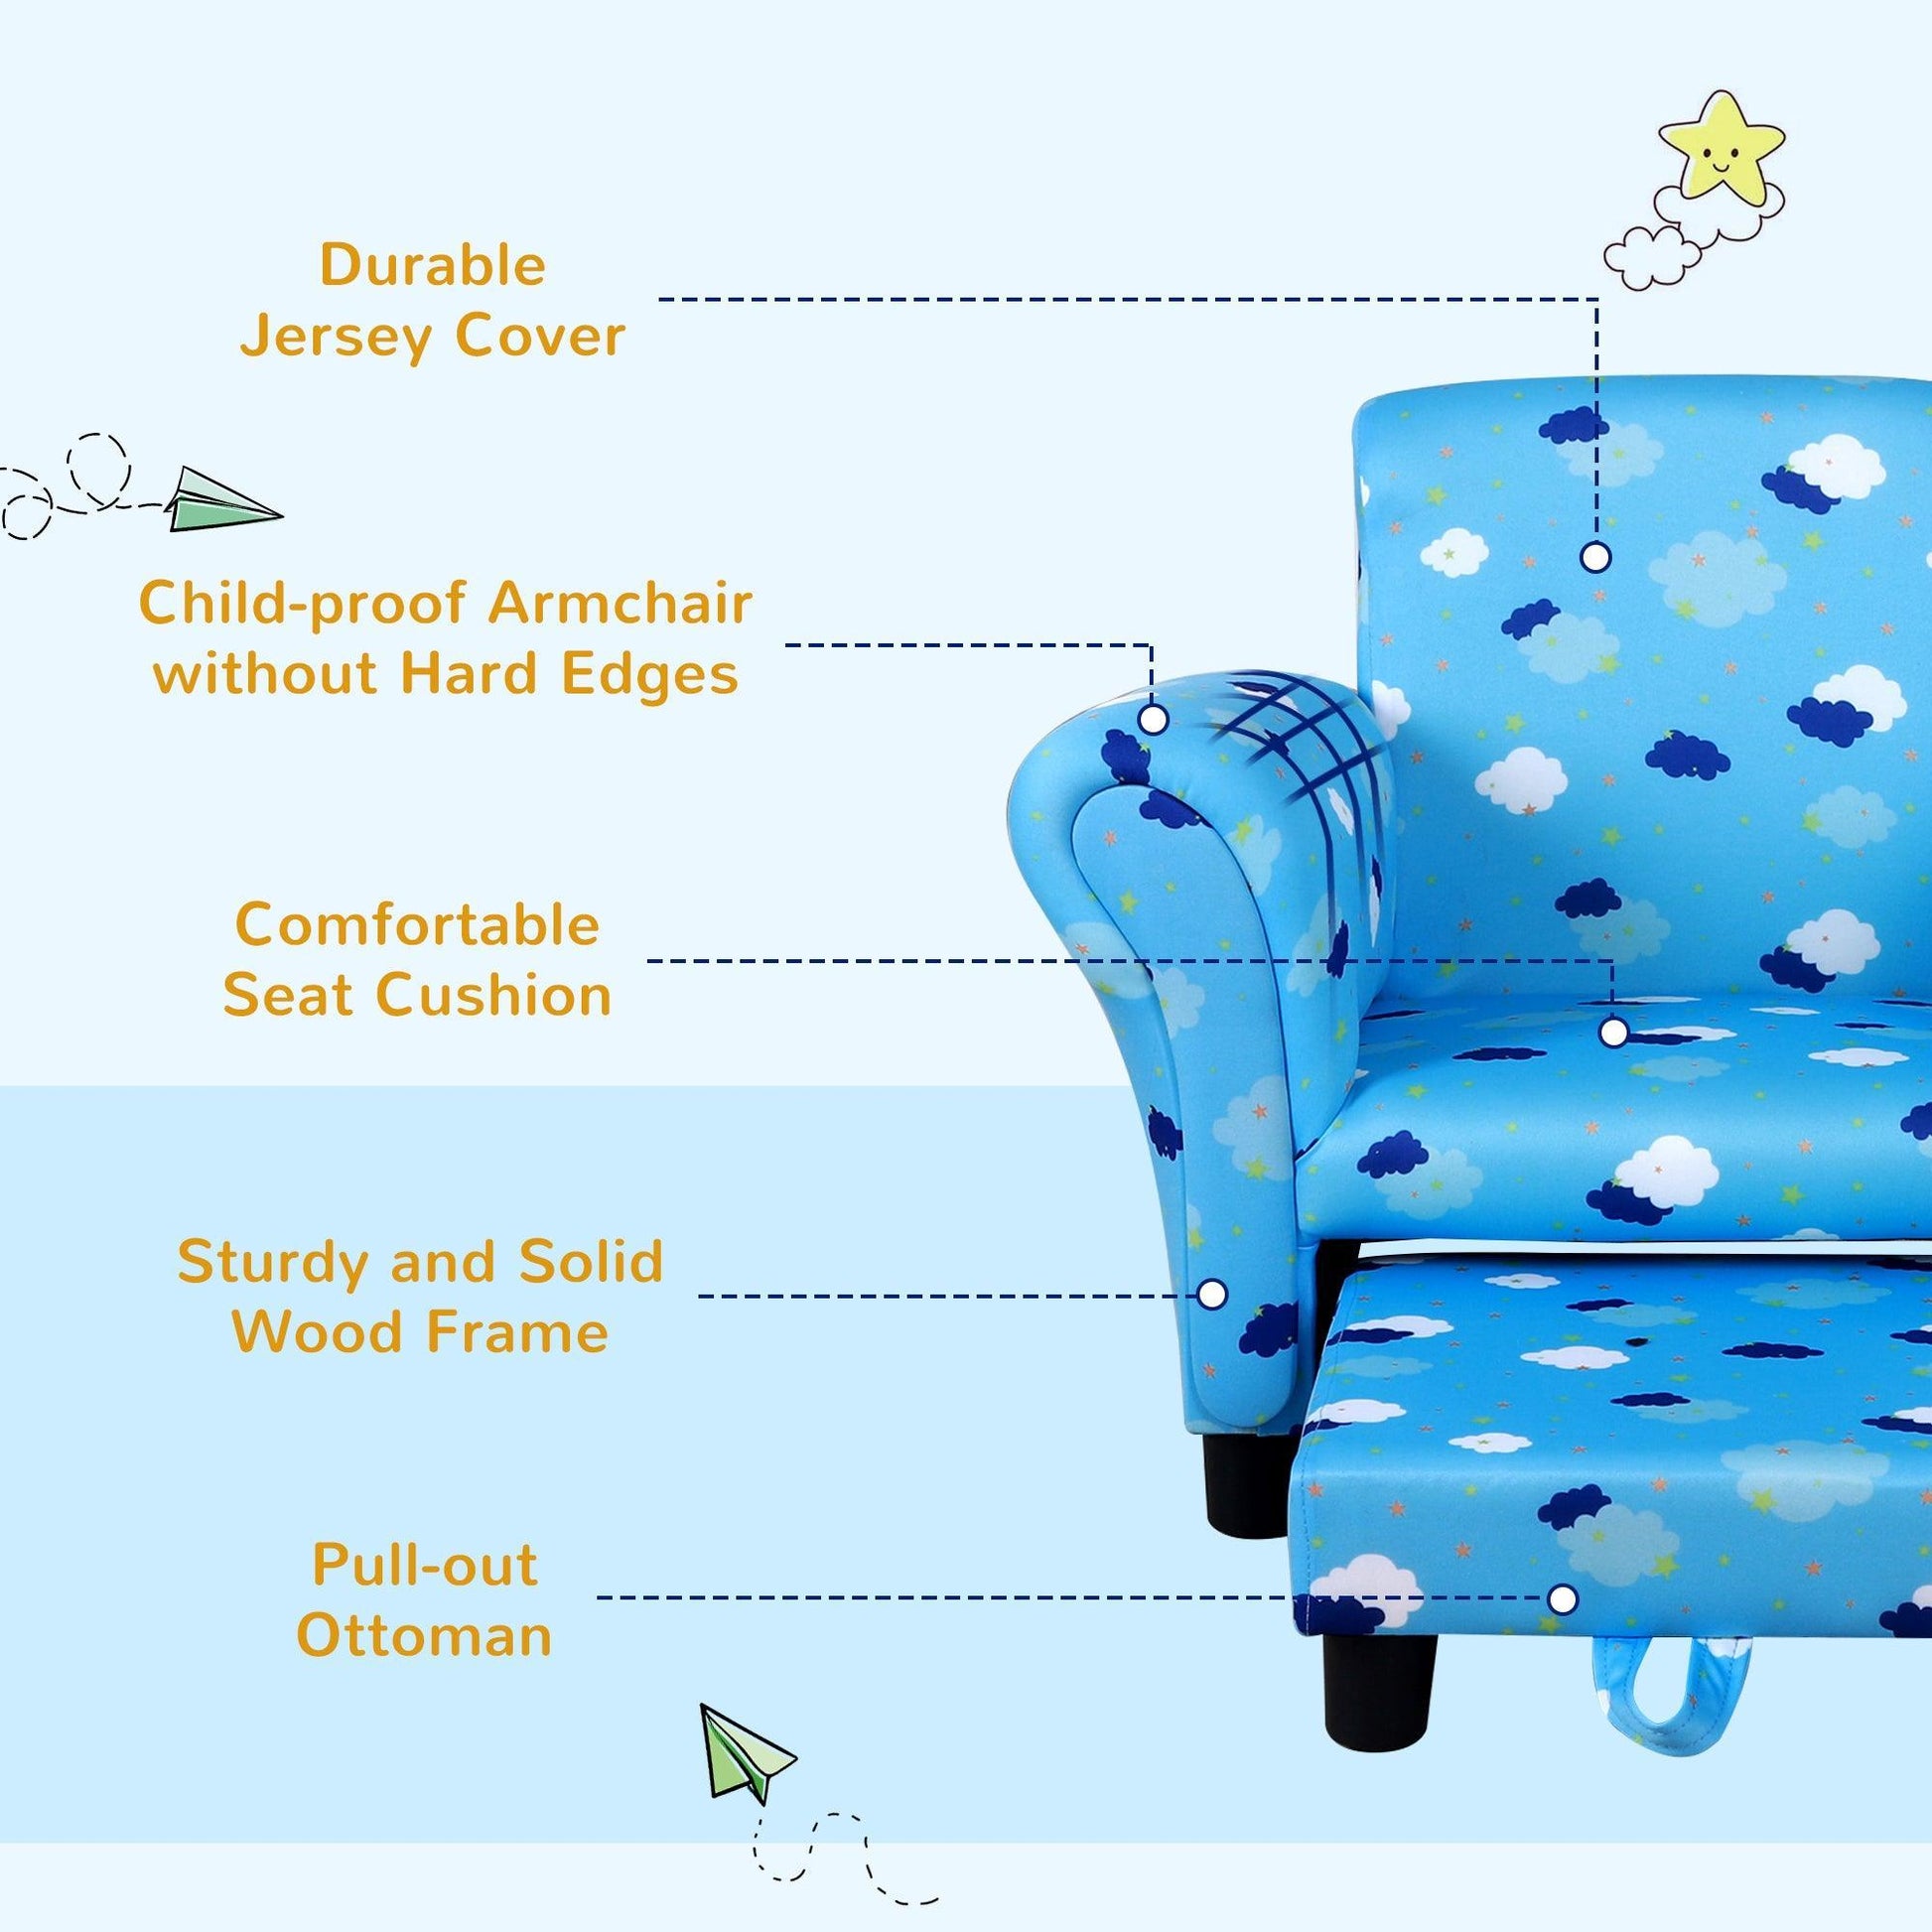 HOMCOM Kids Sofa with Footrest – Adorable Blue Cloud Star - ALL4U RETAILER LTD